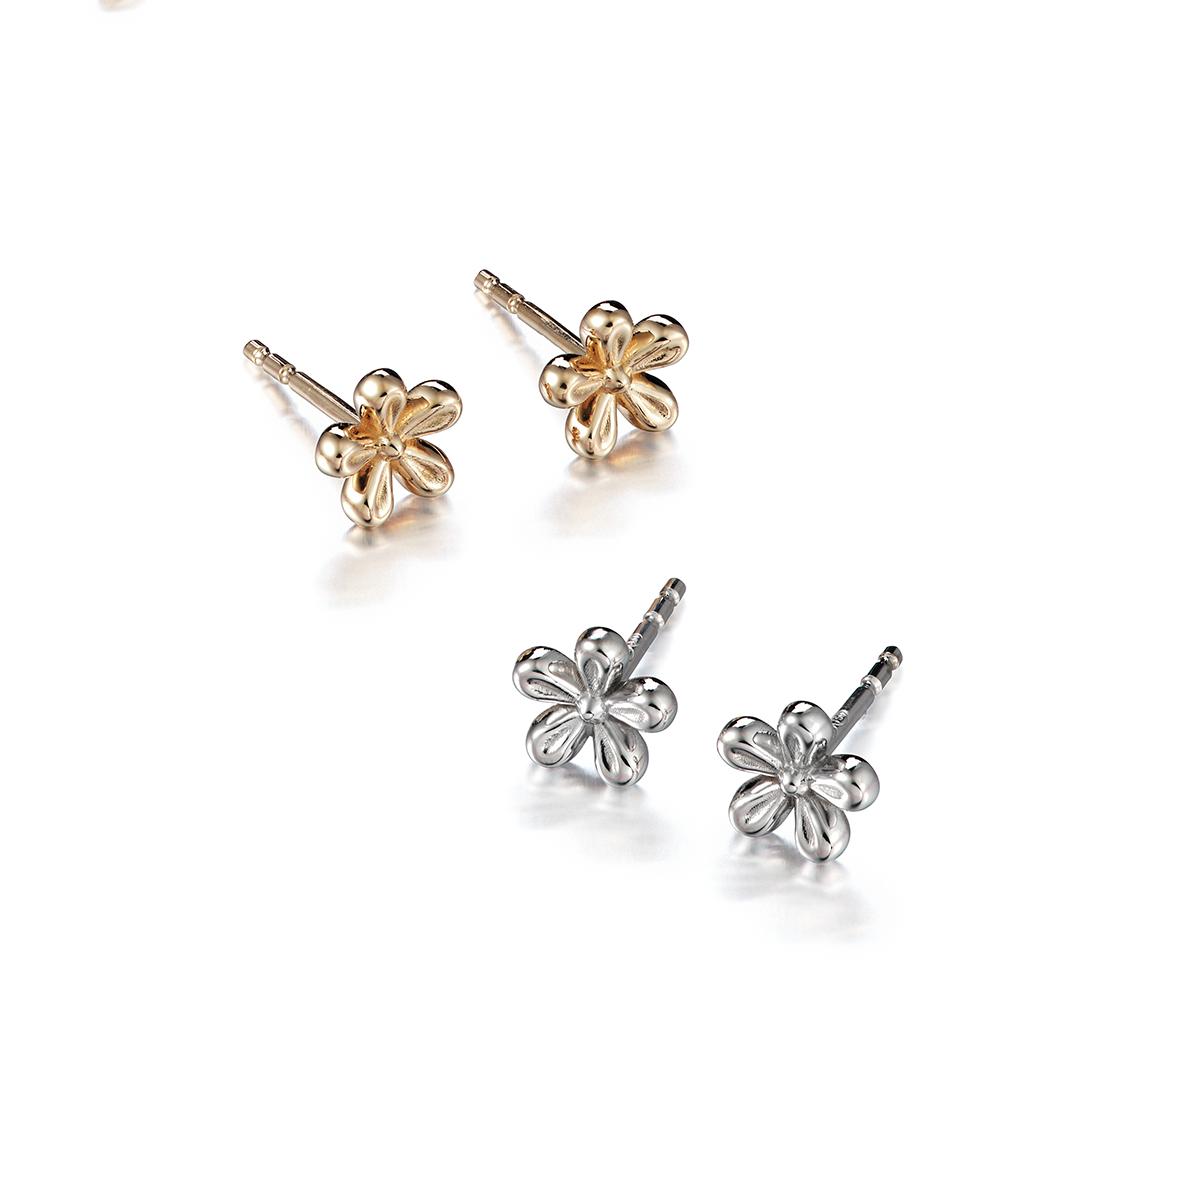 Juuret - Roots: Golden flower earrings